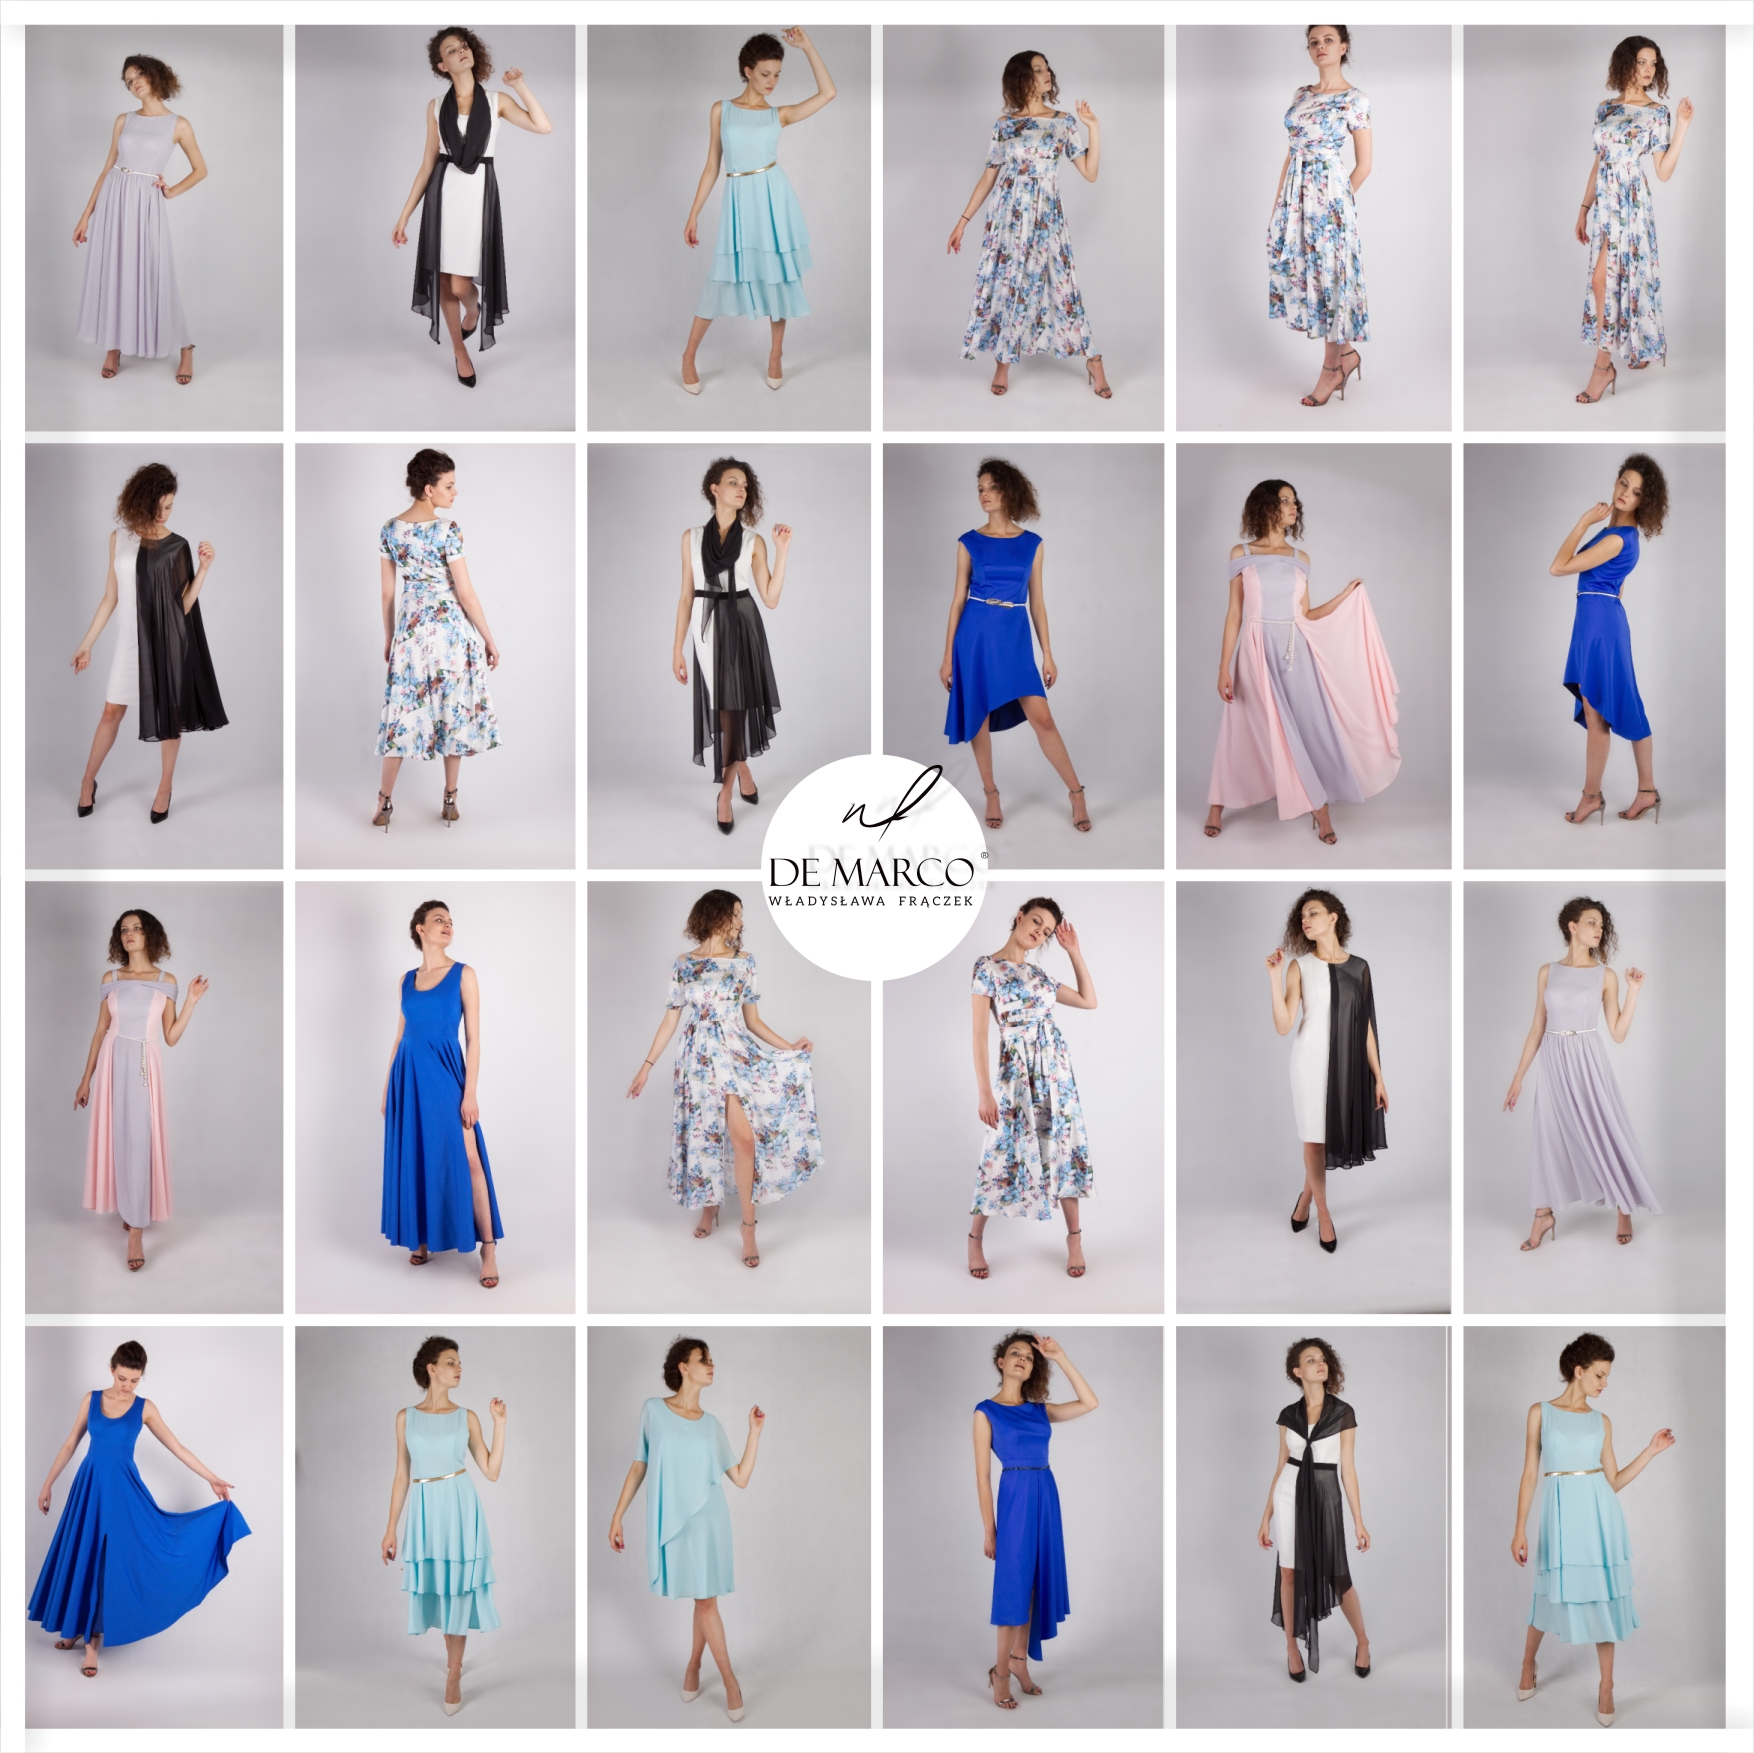 eleganckie sukienki De Marco. sklep internetowy 